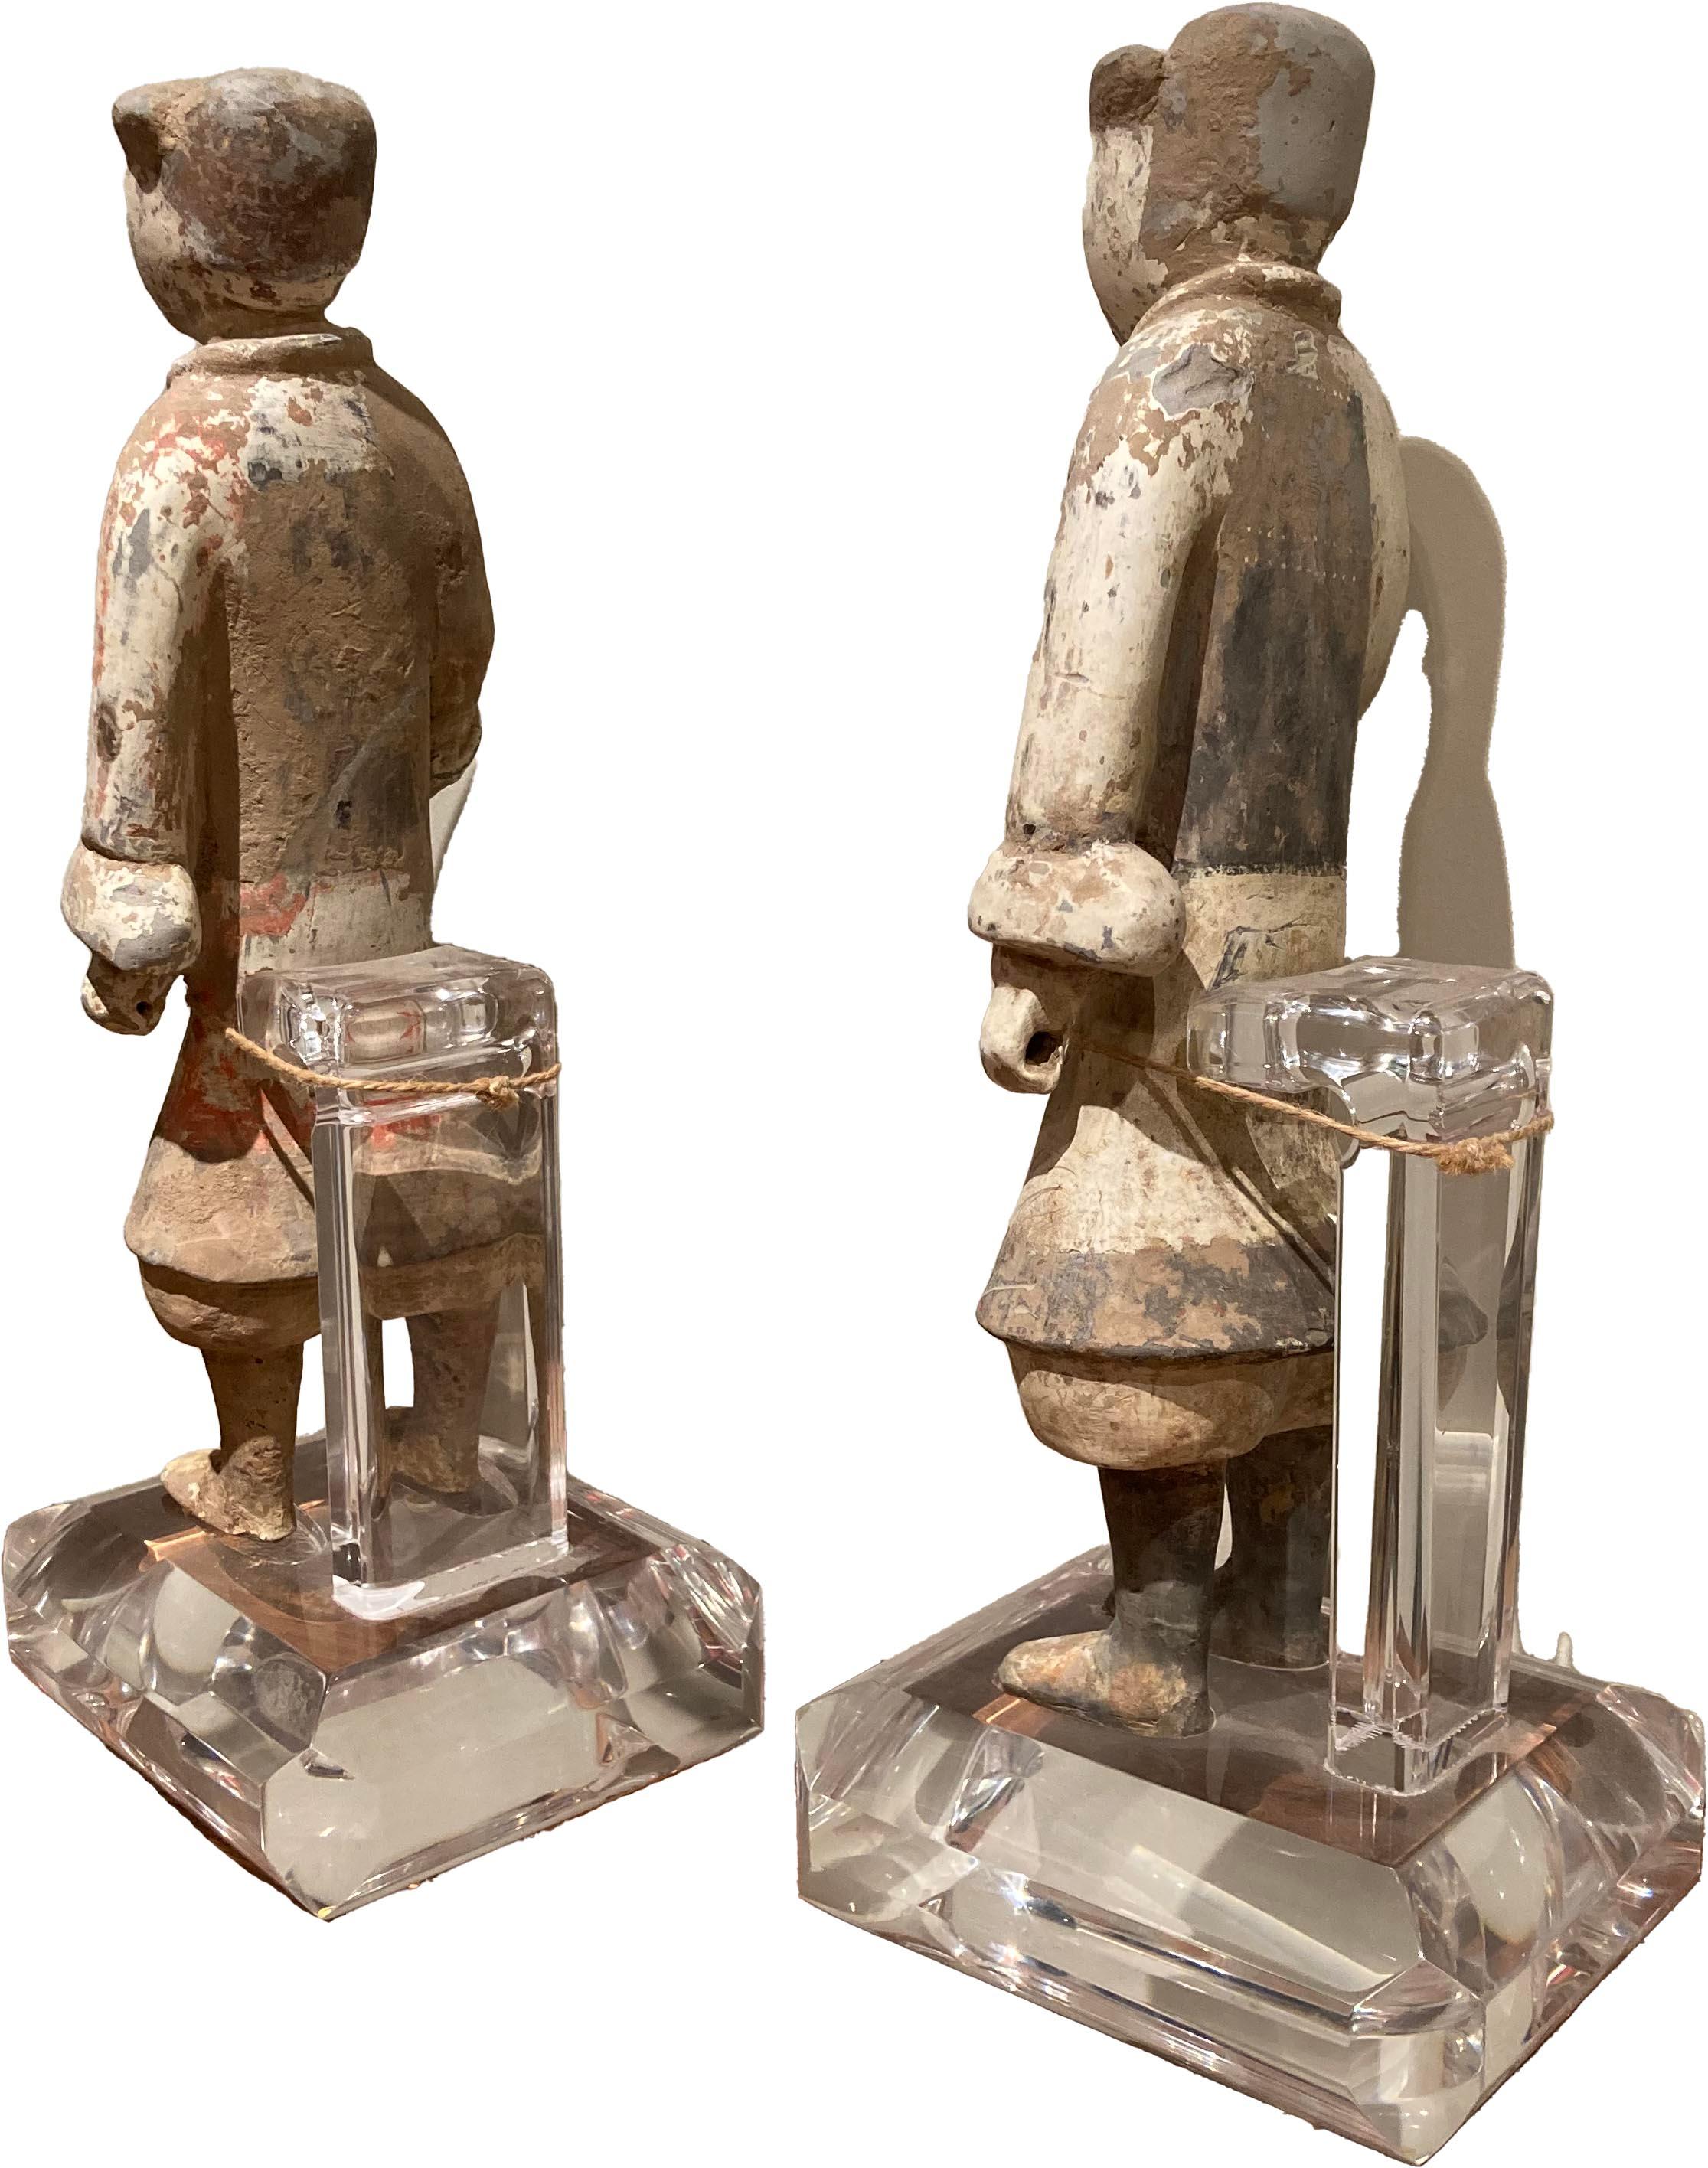 Paire de figurines funéraires de soldats en terre cuite sur socles en lucite. Il s'agit de deux figurines bien conservées avec quelques écaillures de peinture et de la vaisselle - peintes en blanc et en gris. Créé dans le style de la dynastie Han.